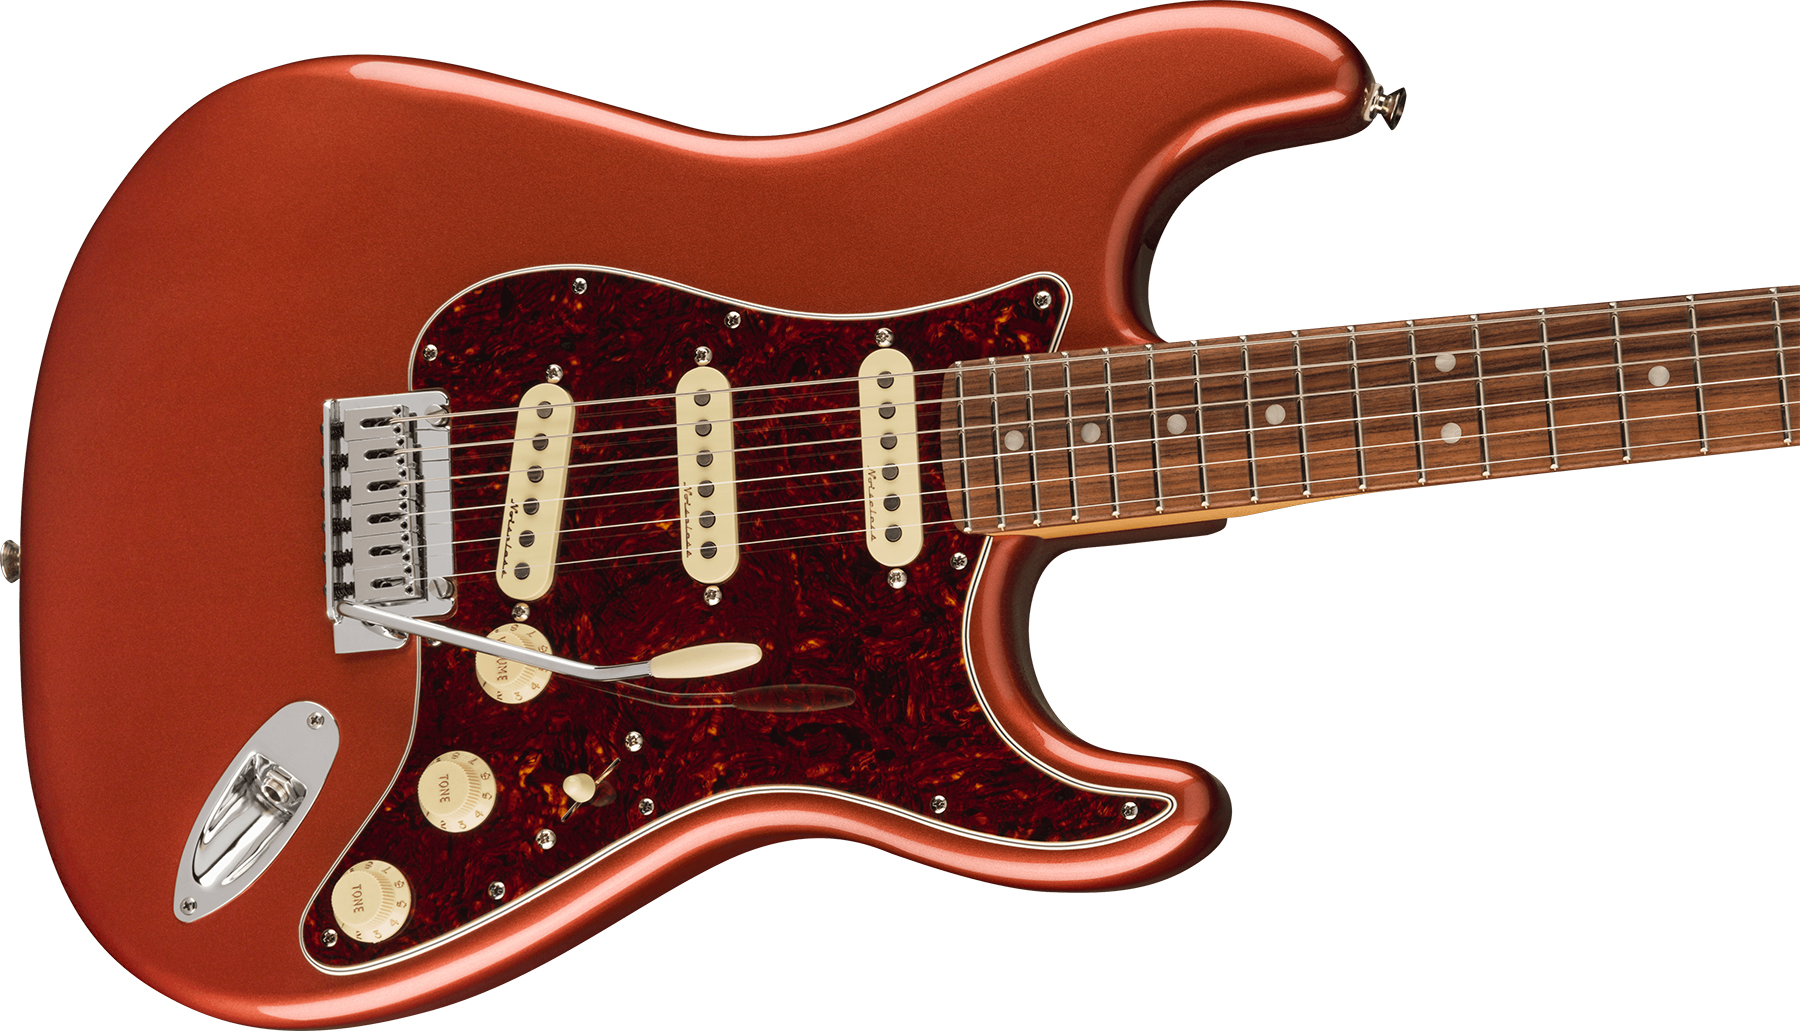 Fender Strat Player Plus Mex 3s Trem Pf - Aged Candy Apple Red - Elektrische gitaar in Str-vorm - Variation 2